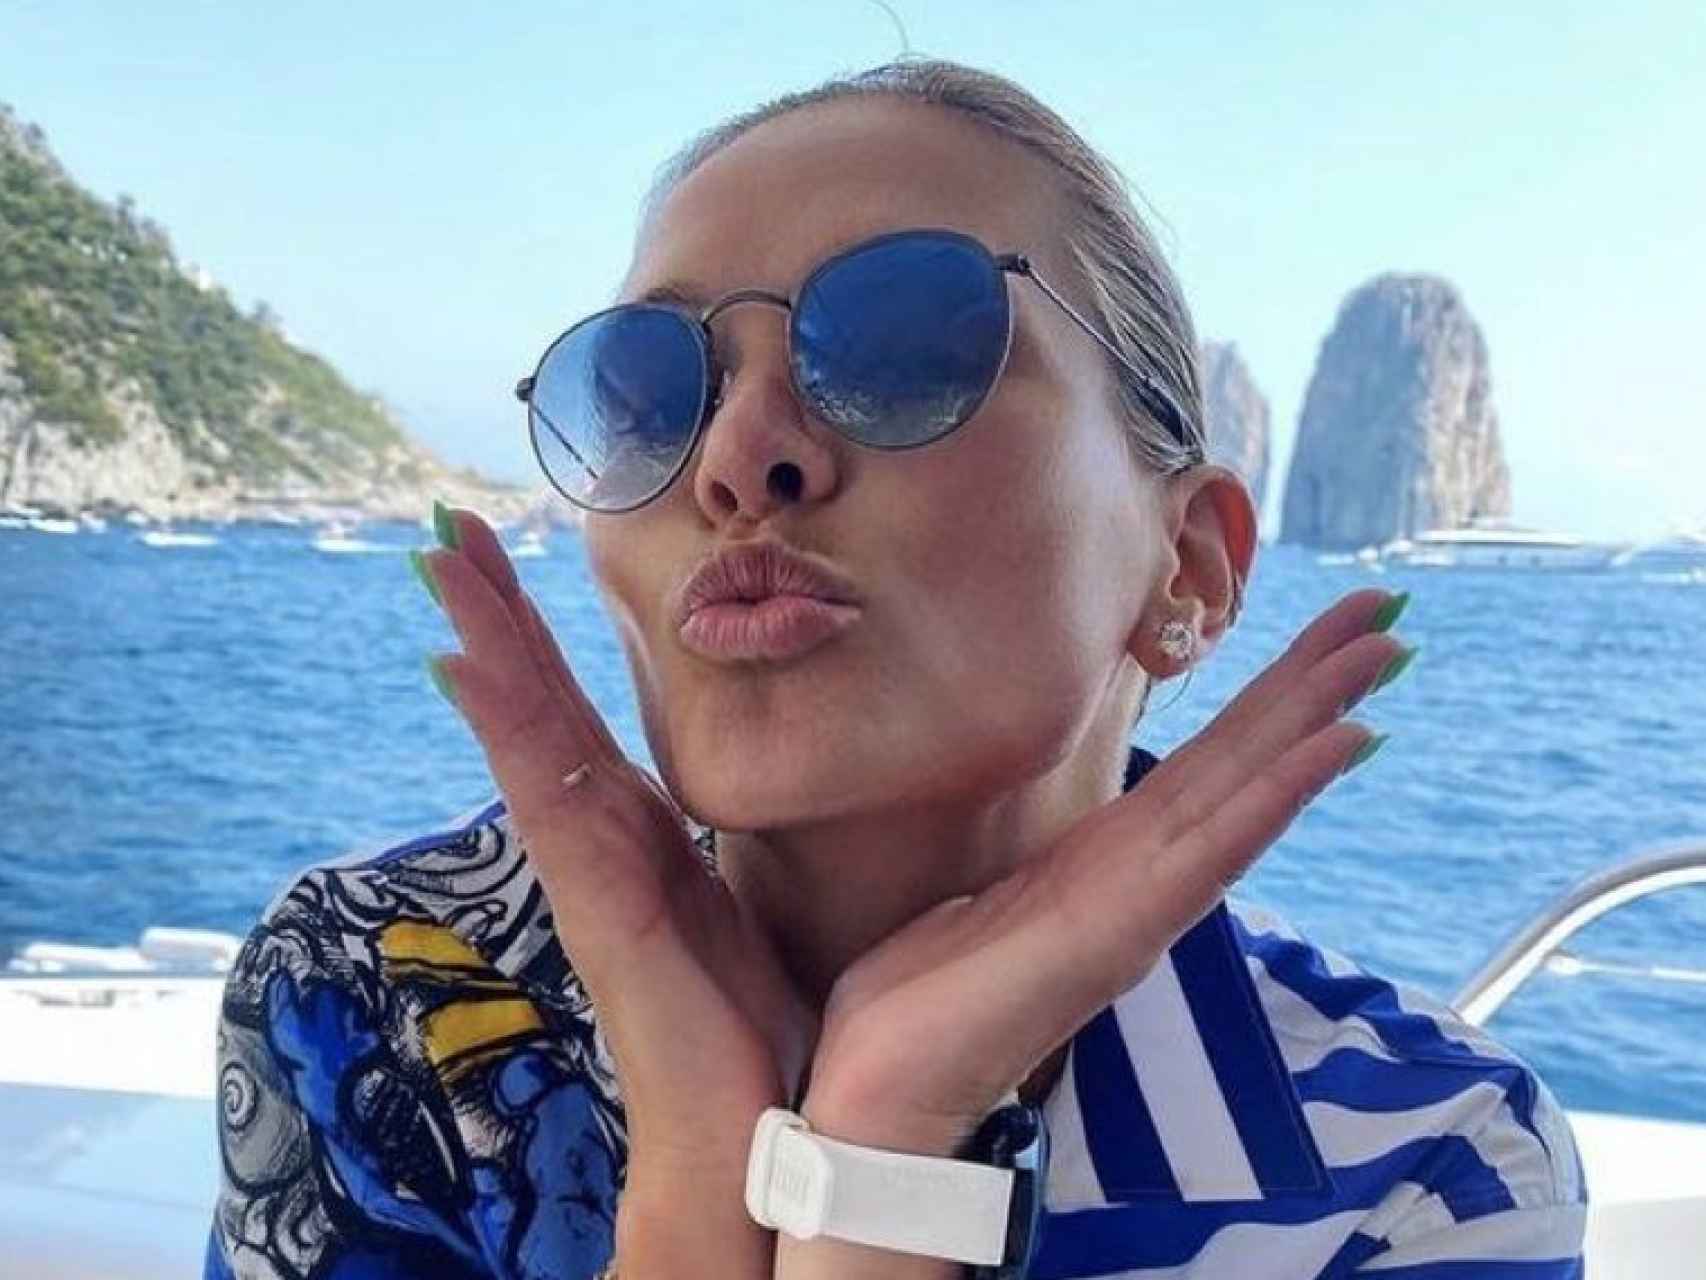 Polina Kovaleva en una imagen de sus redes sociales durante unas vacaciones.